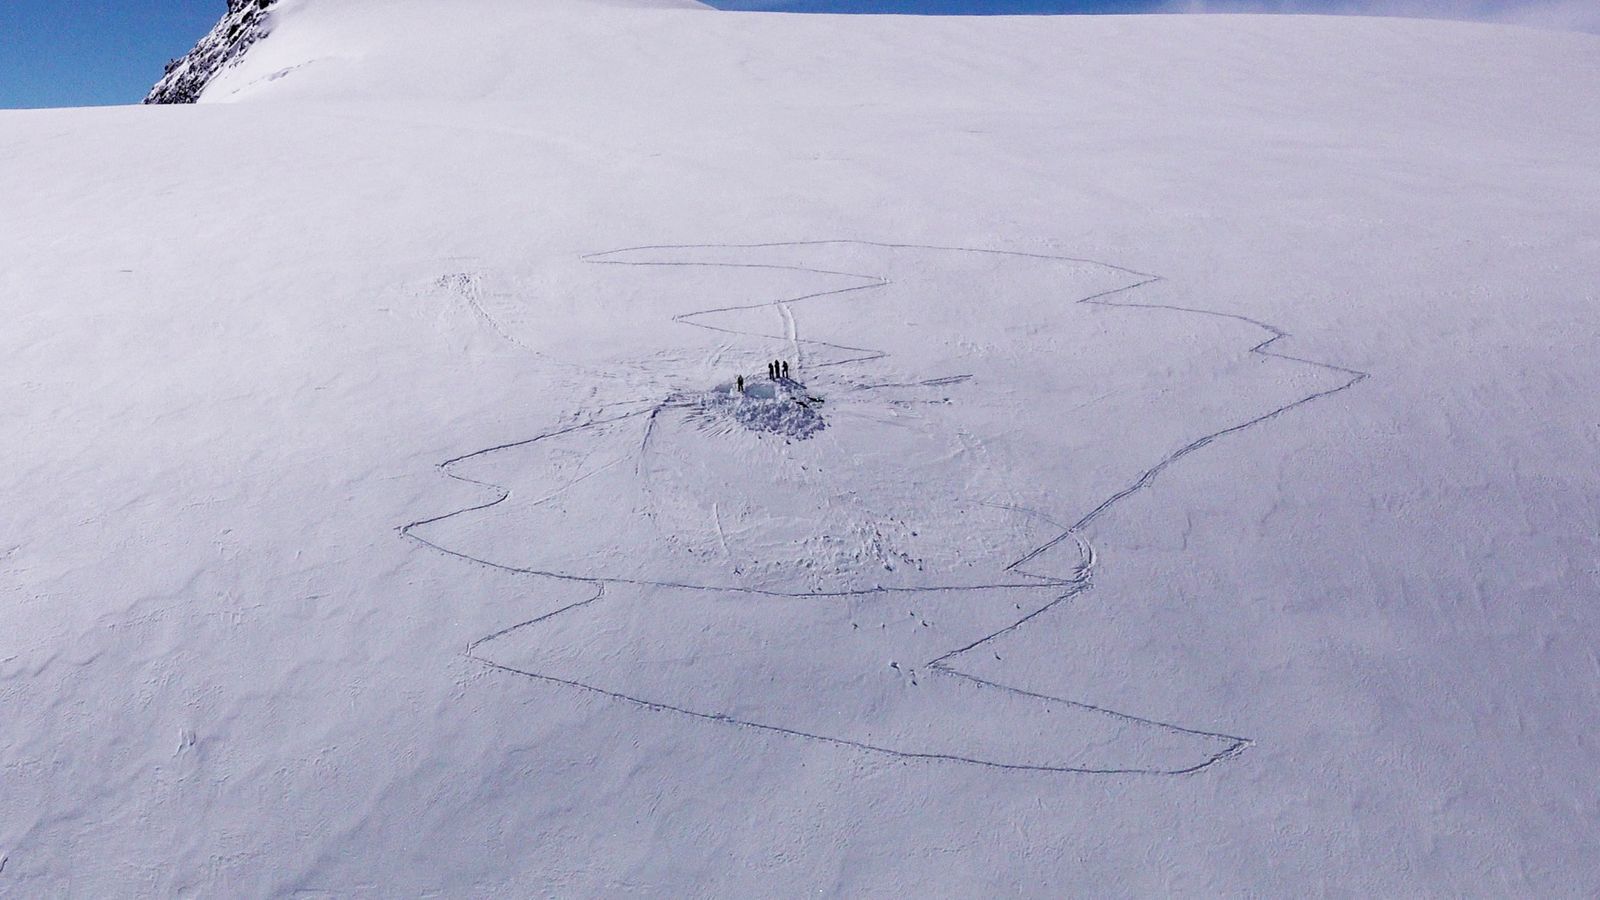 Изчезналите скиори са се опитали да изкопаят „снежни пещери“, преди да умрат в швейцарските Алпи, казва спасителят